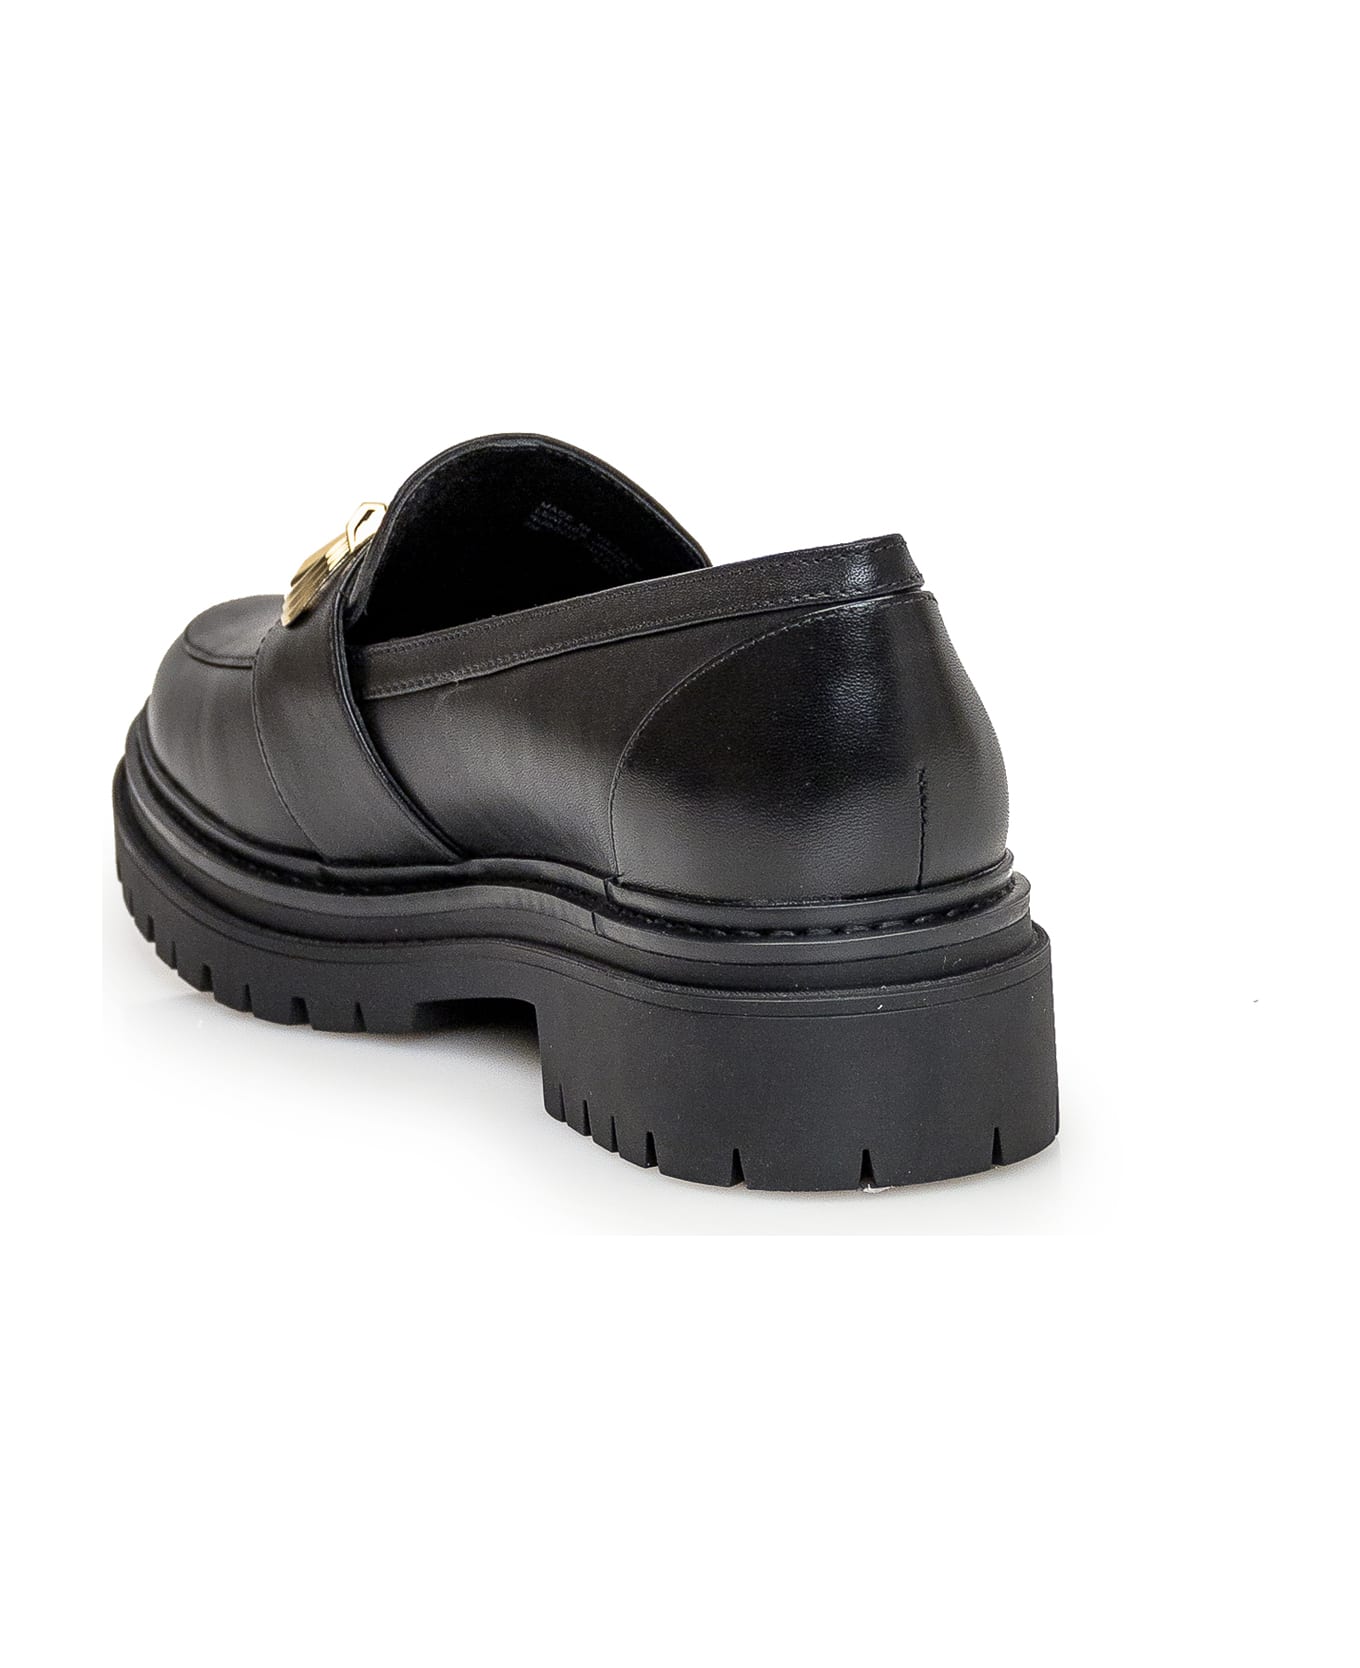 Michael Kors Collection Parker Leather Loafer - Black